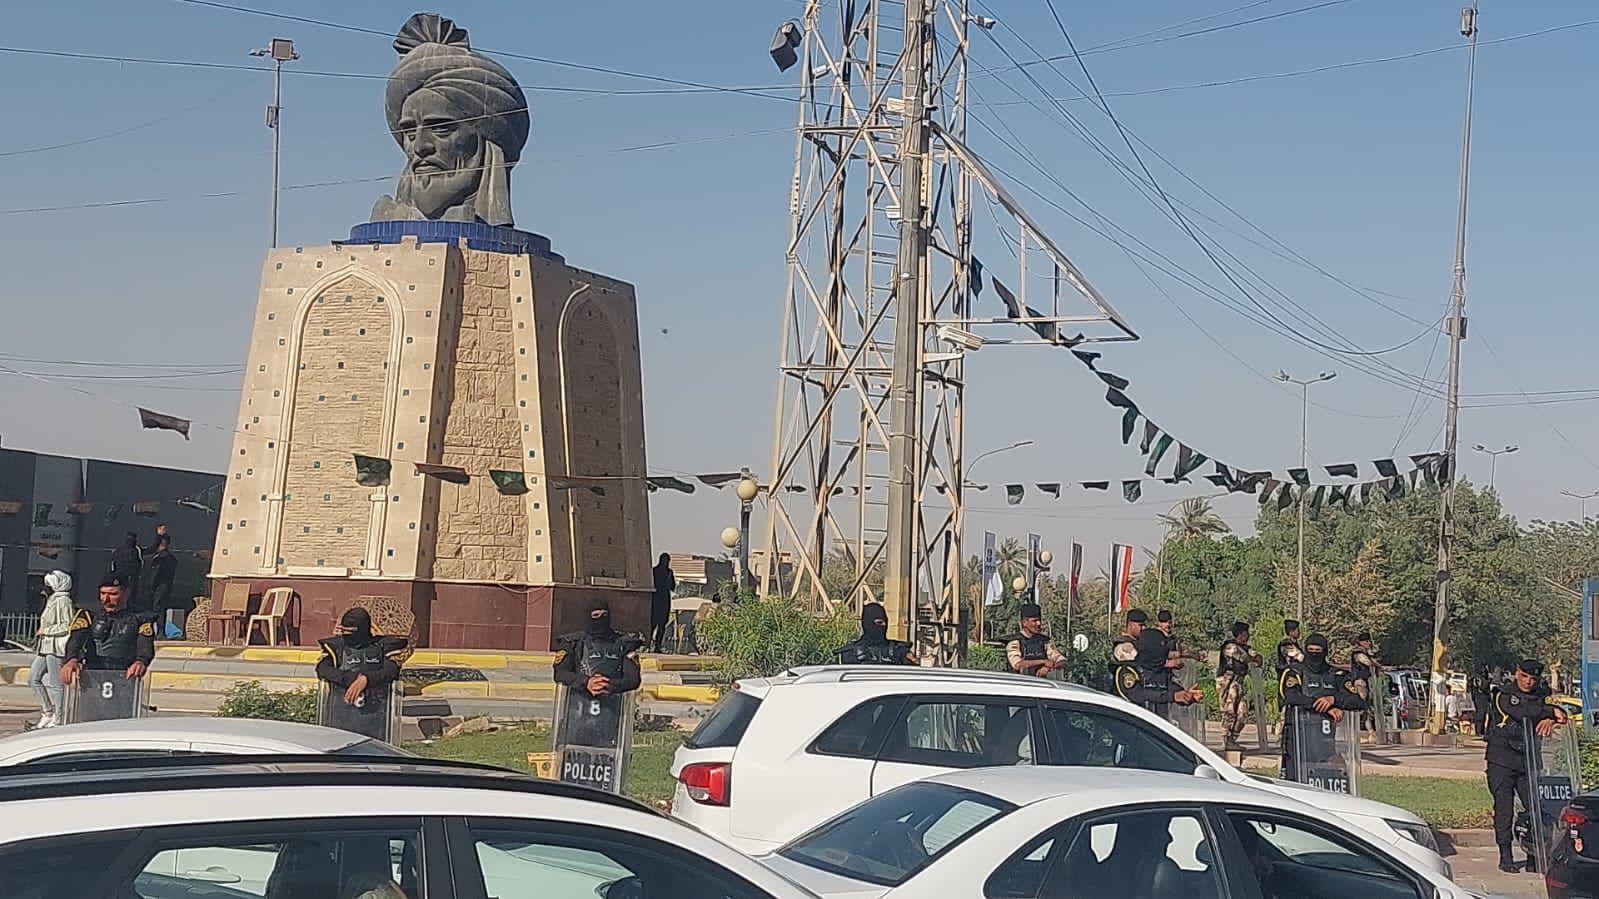 استخبارات بغداد تتعقب شخصاً كتب عبارات مسيئة على تمثال "أبي جعفر المنصور"